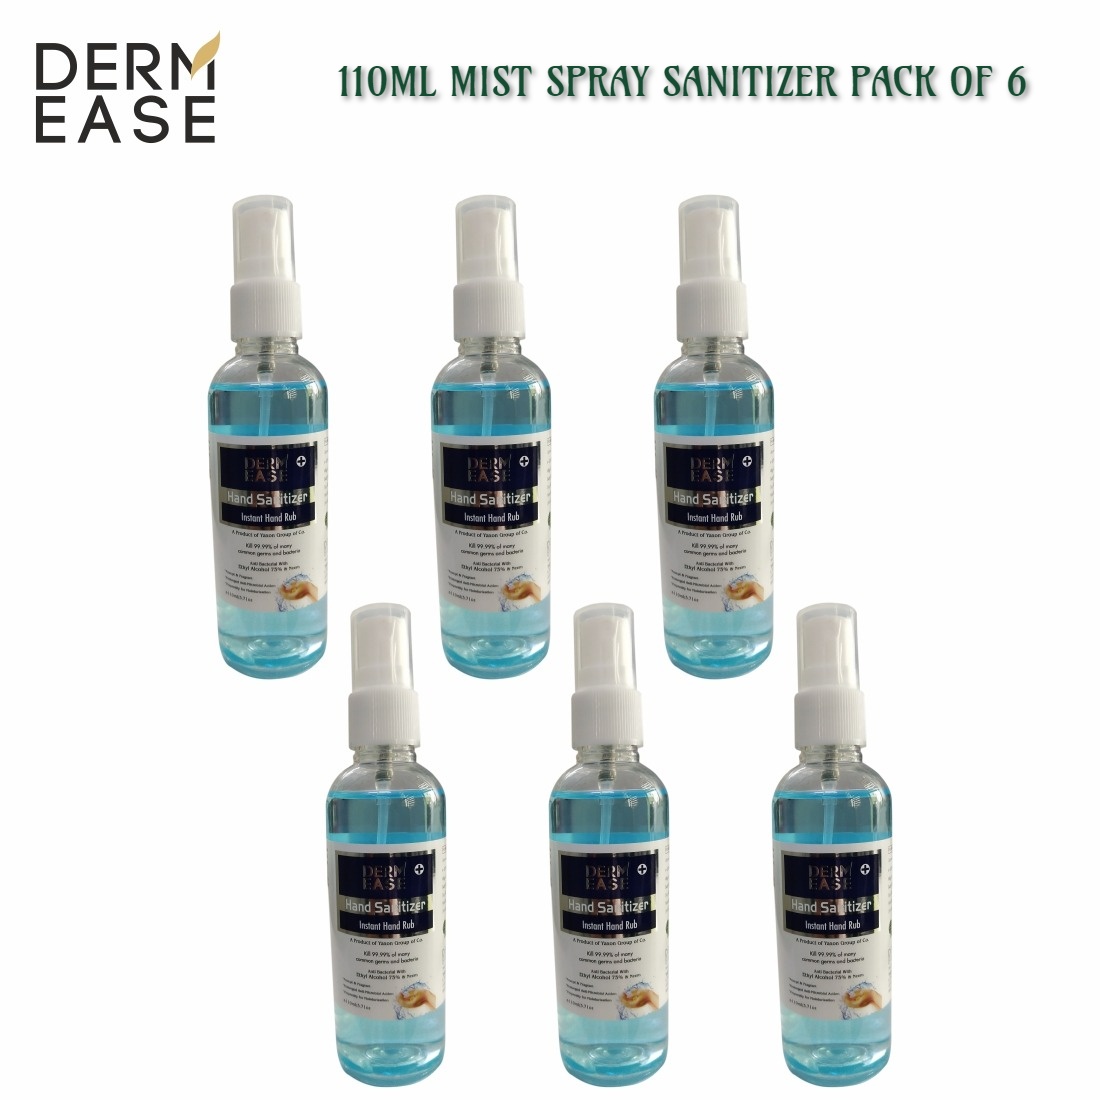 DERM EASE MIST PUMP SPRAY Hand Sanitizer 110ml 6 Bottle Pack